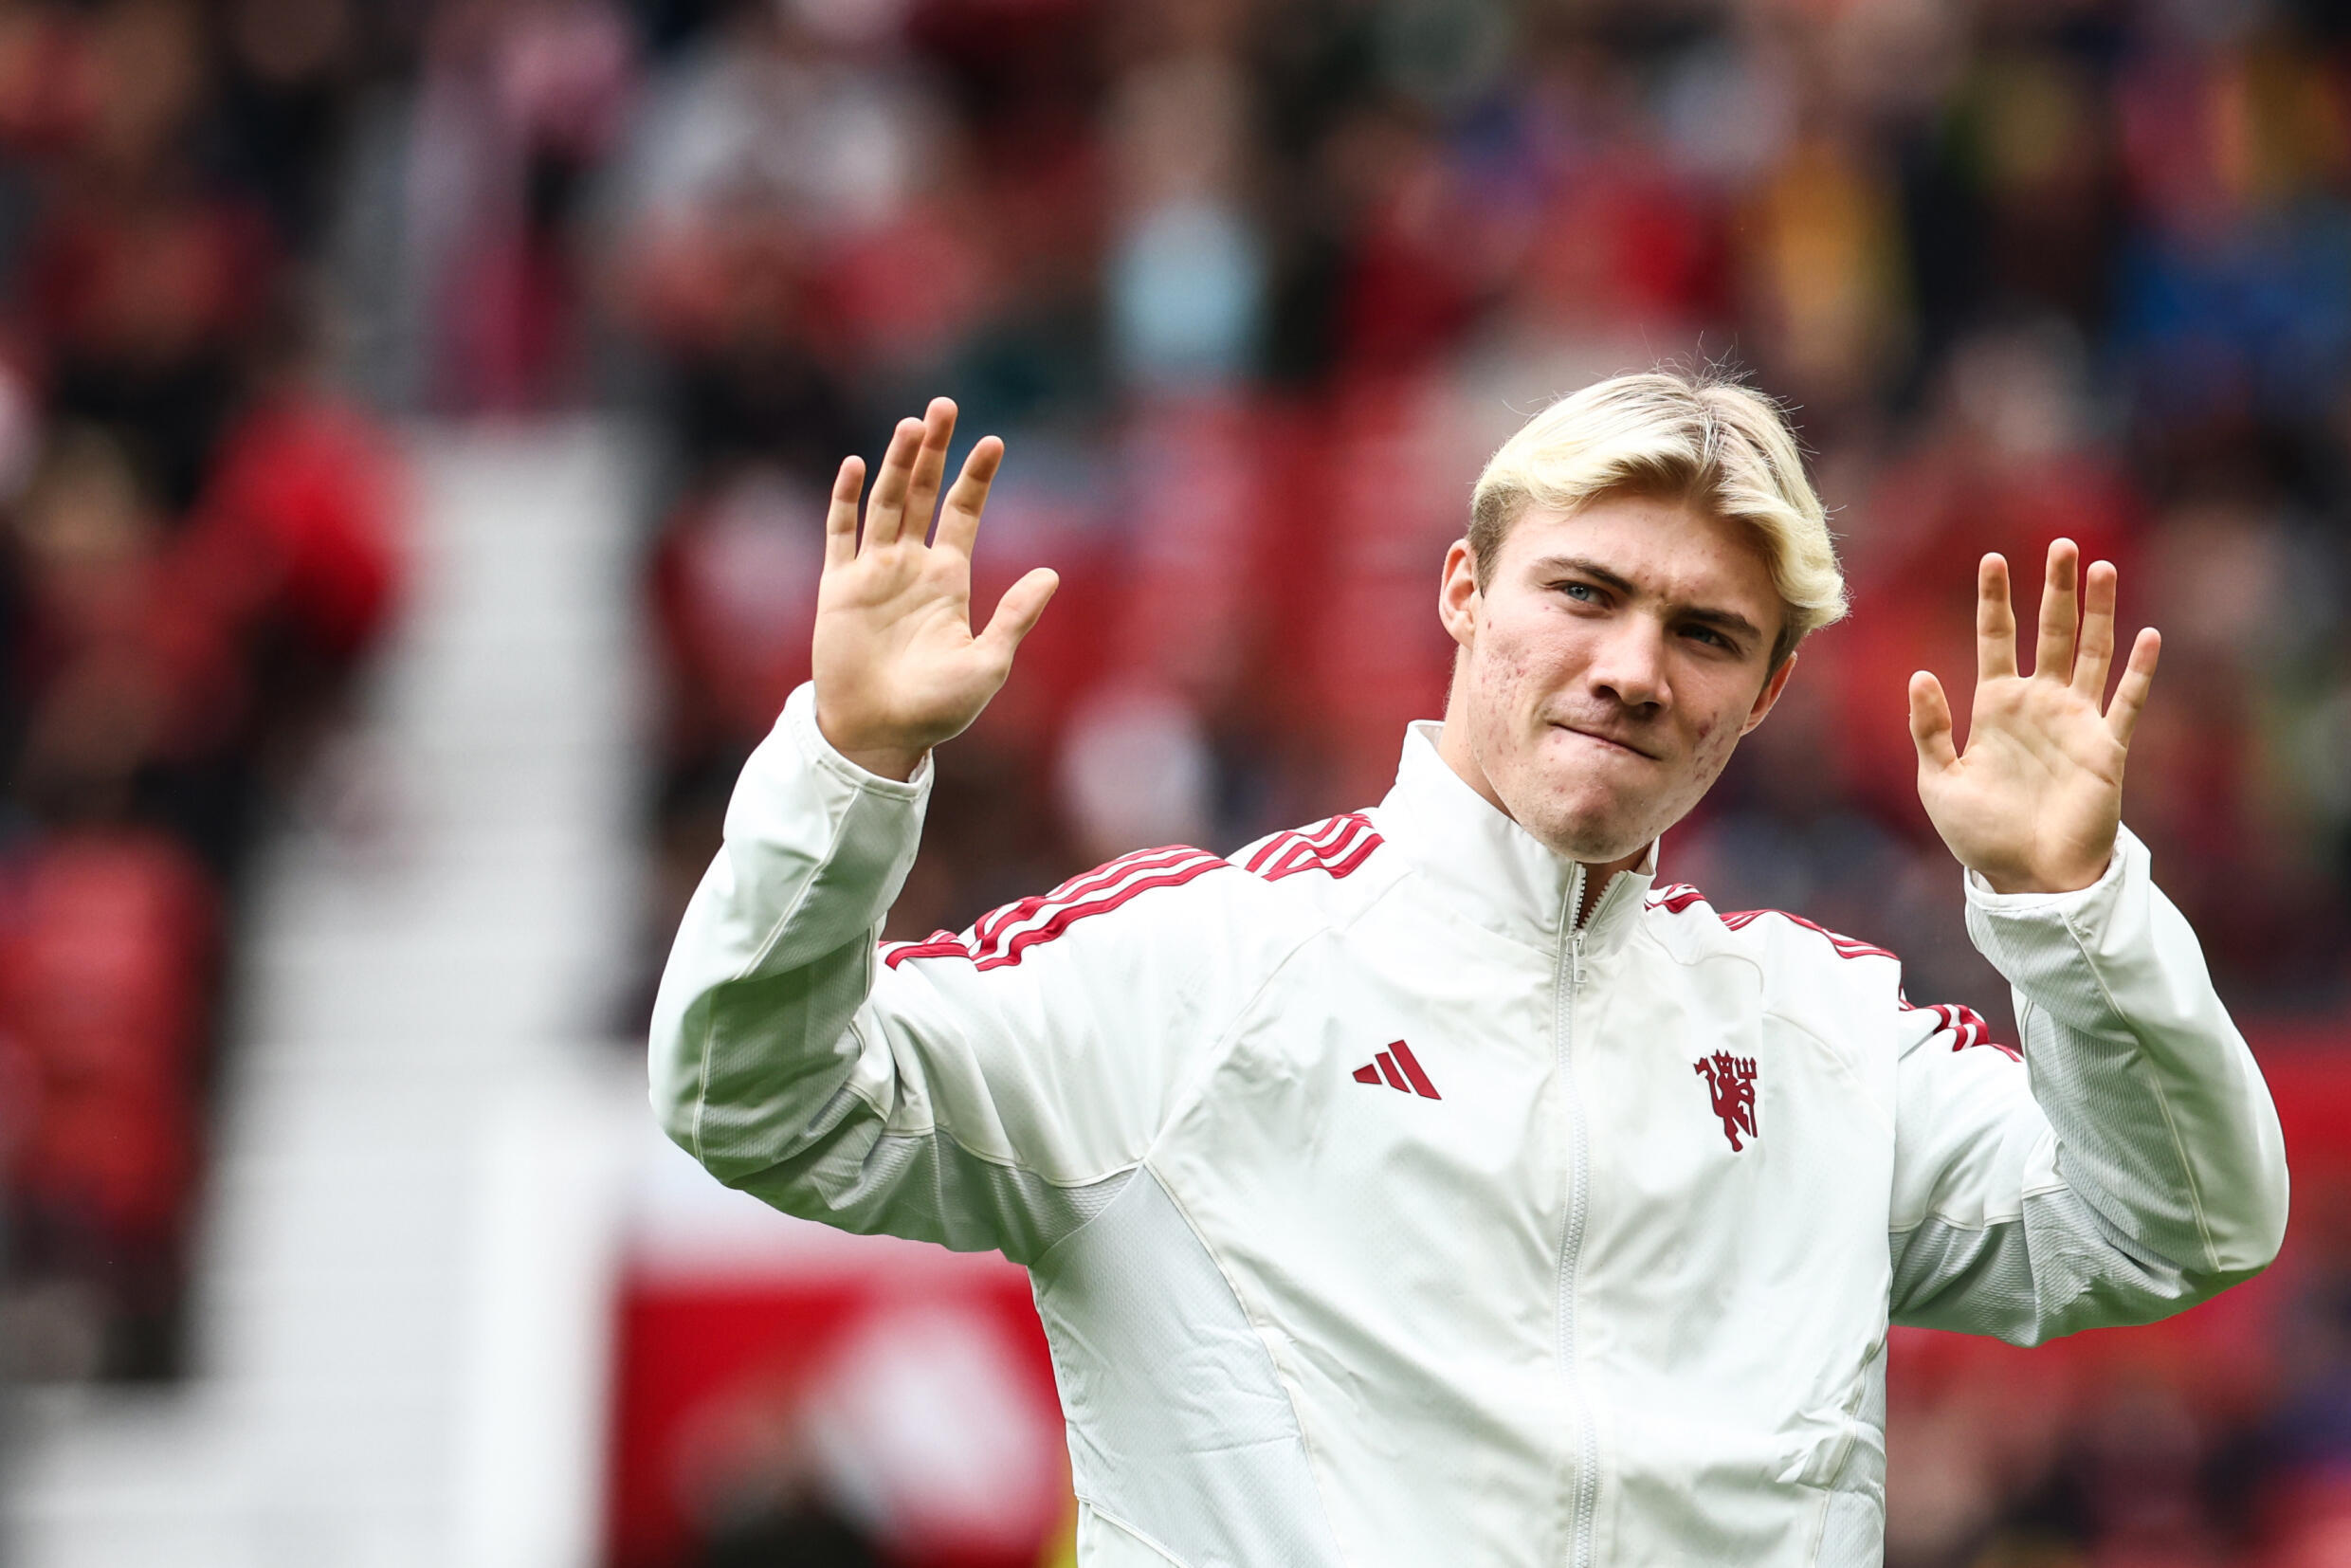 Rasmus Hojlund is Manchester United's new striker